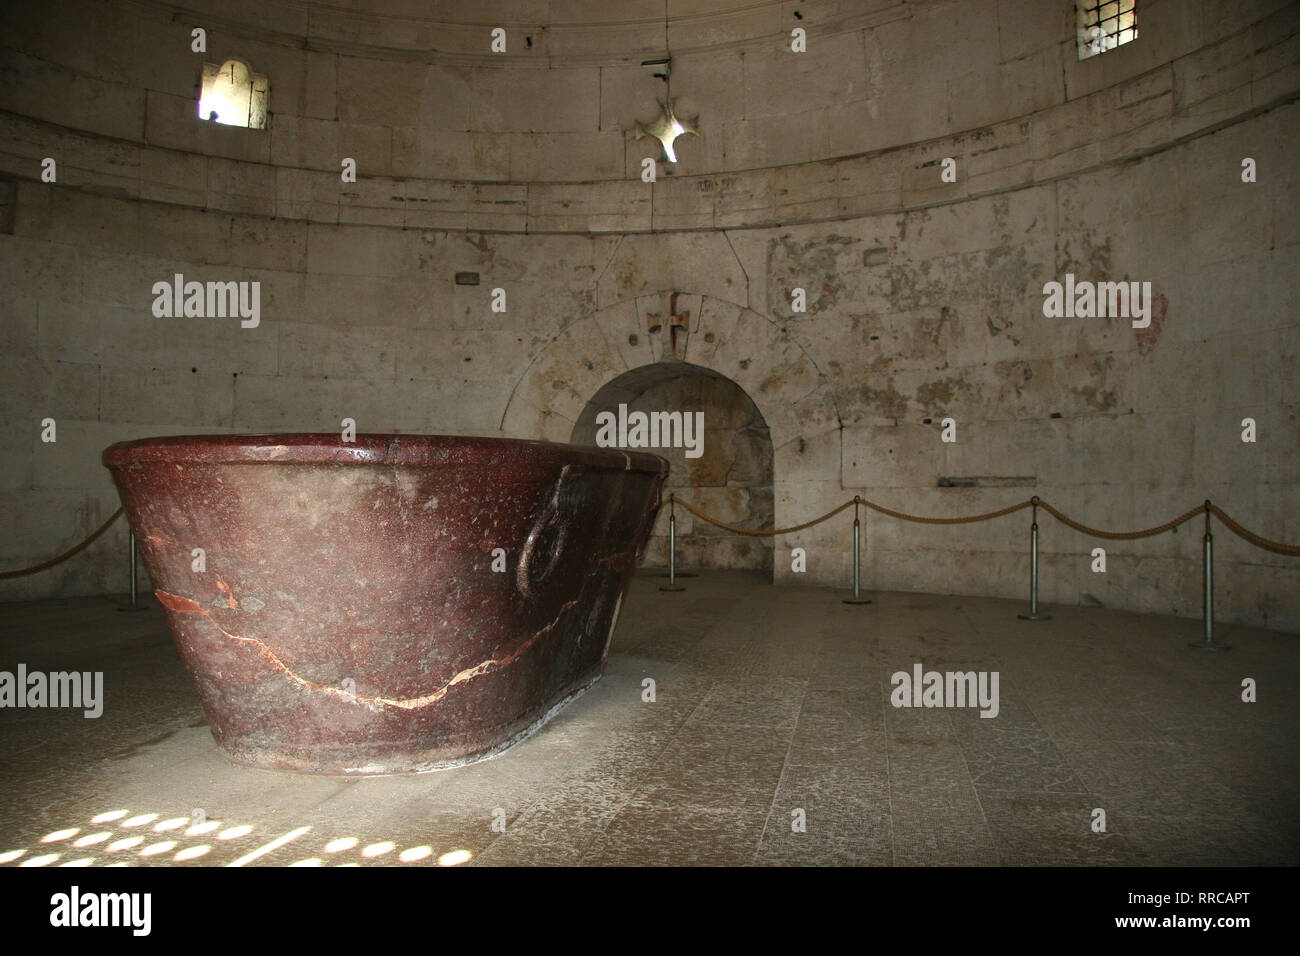 Italien. Ravenna. Mausoleum von Theoderic, König der Ostgoten, 520. Porphyr Sarkophag. Emilia-Romagna Stockfoto